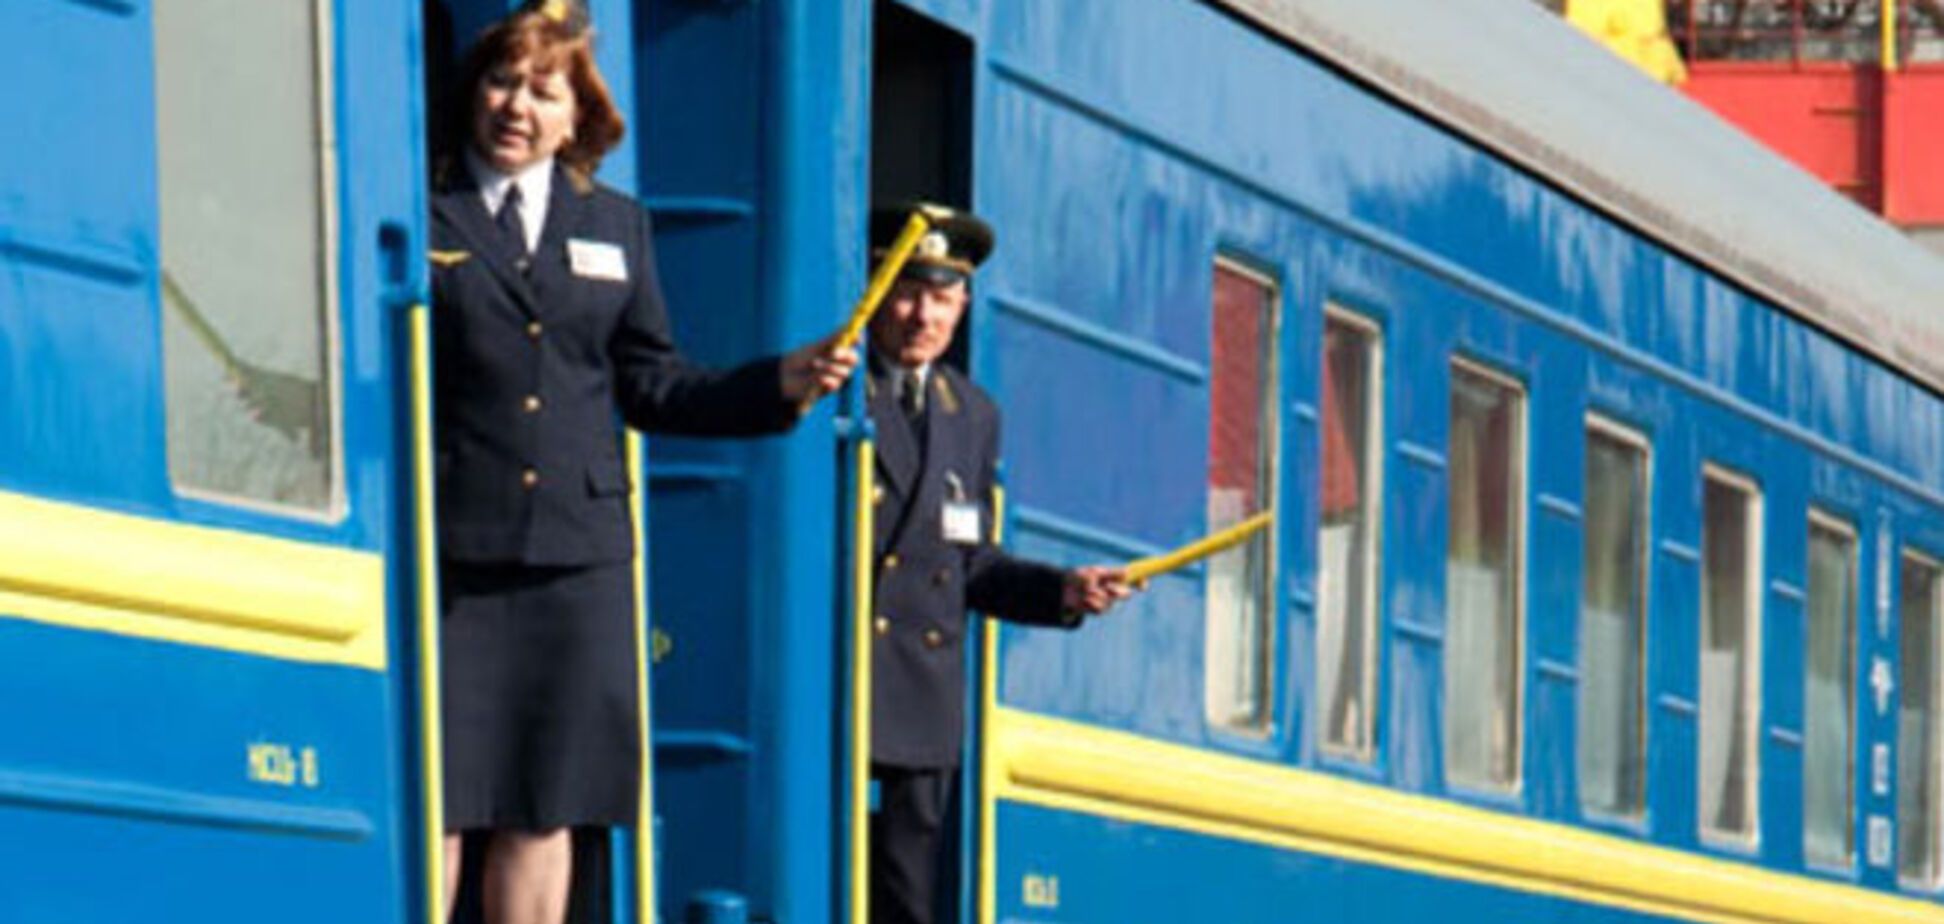 Страховщики пассажиров 'Укрзалізниці' занимаются плагиатом